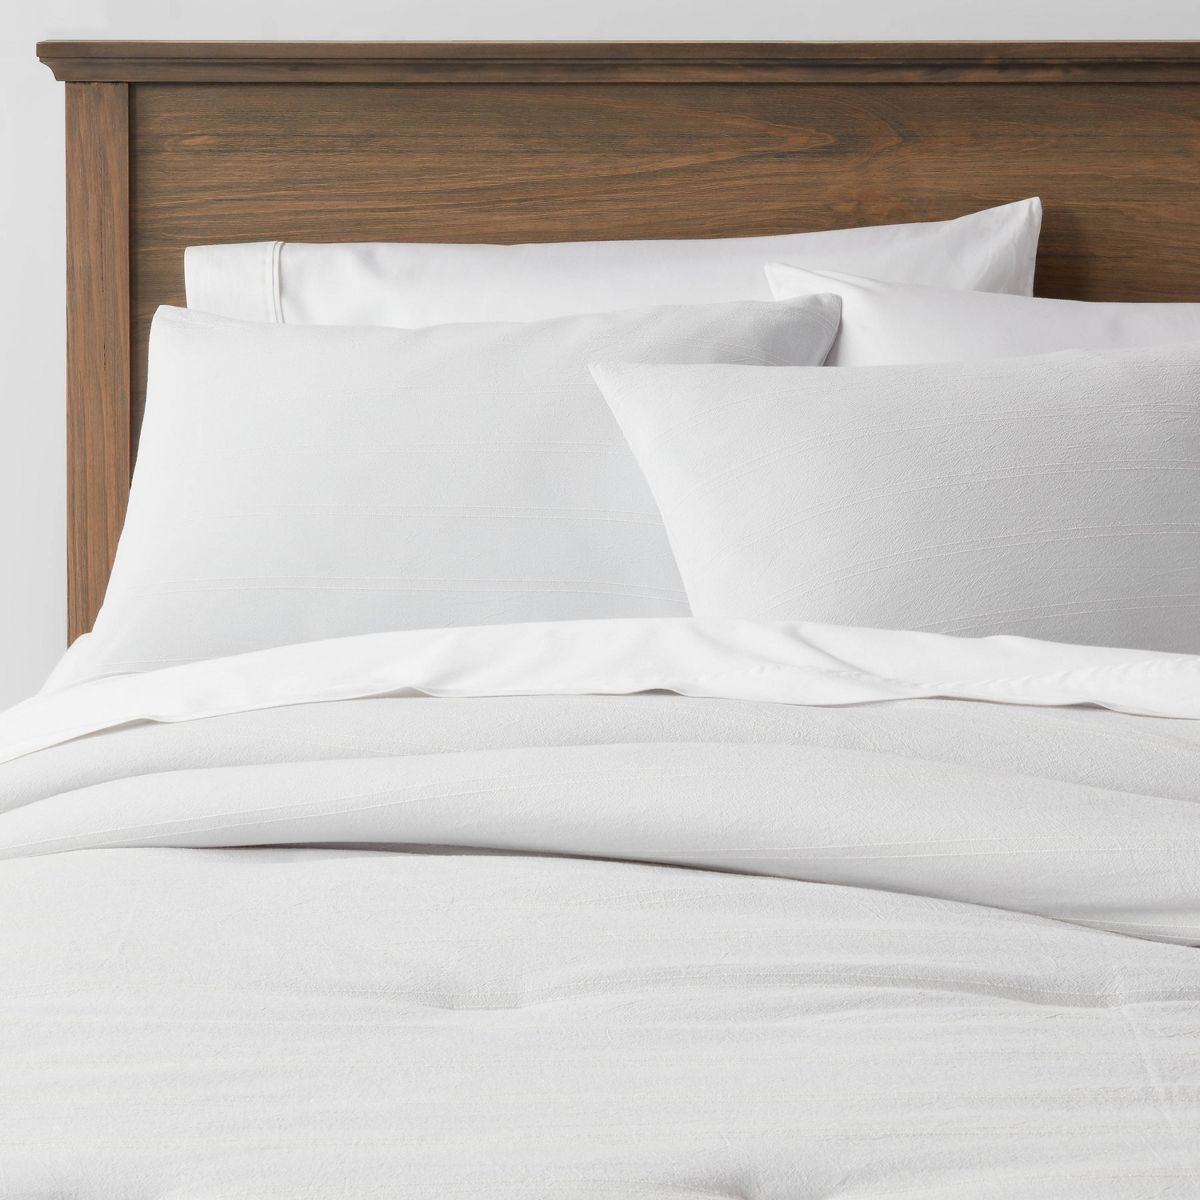 King Simple Woven Stripe Comforter & Sham Set Light Gray - Threshold™ | Target